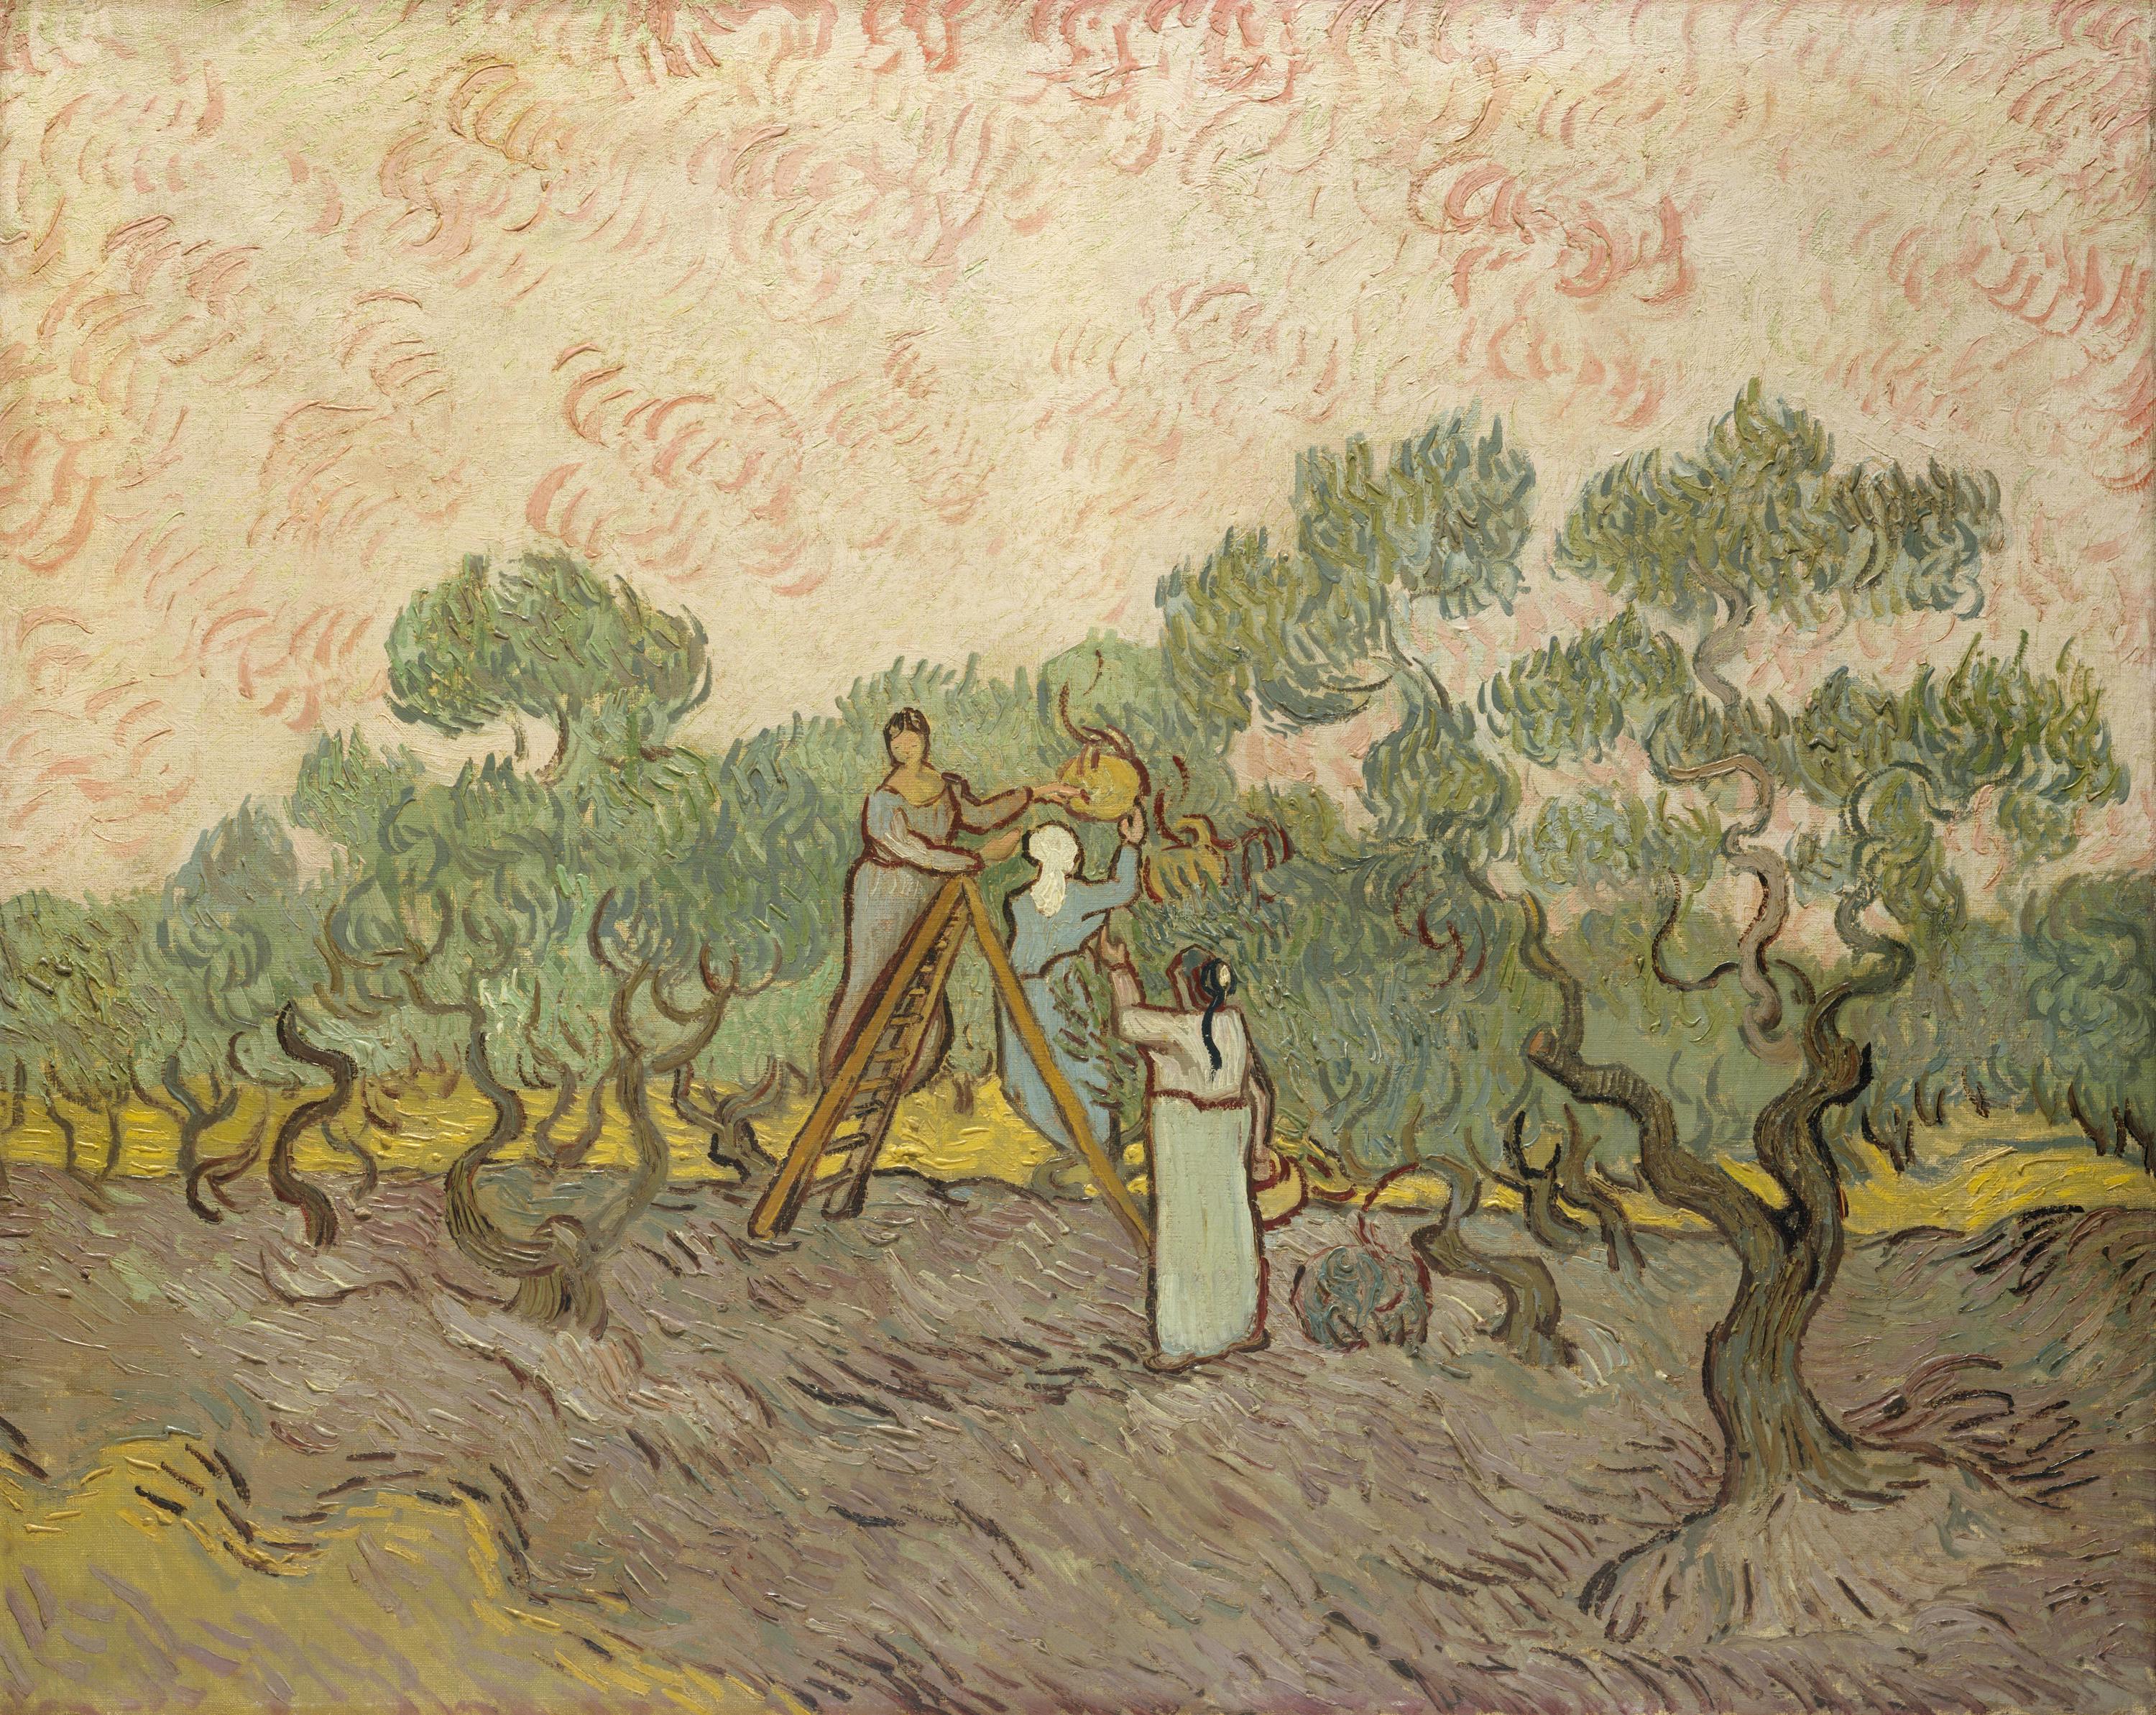 Olajbogyó-szüret by Vincent van Gogh - 1889 - 72.7 x 91.4 cm 